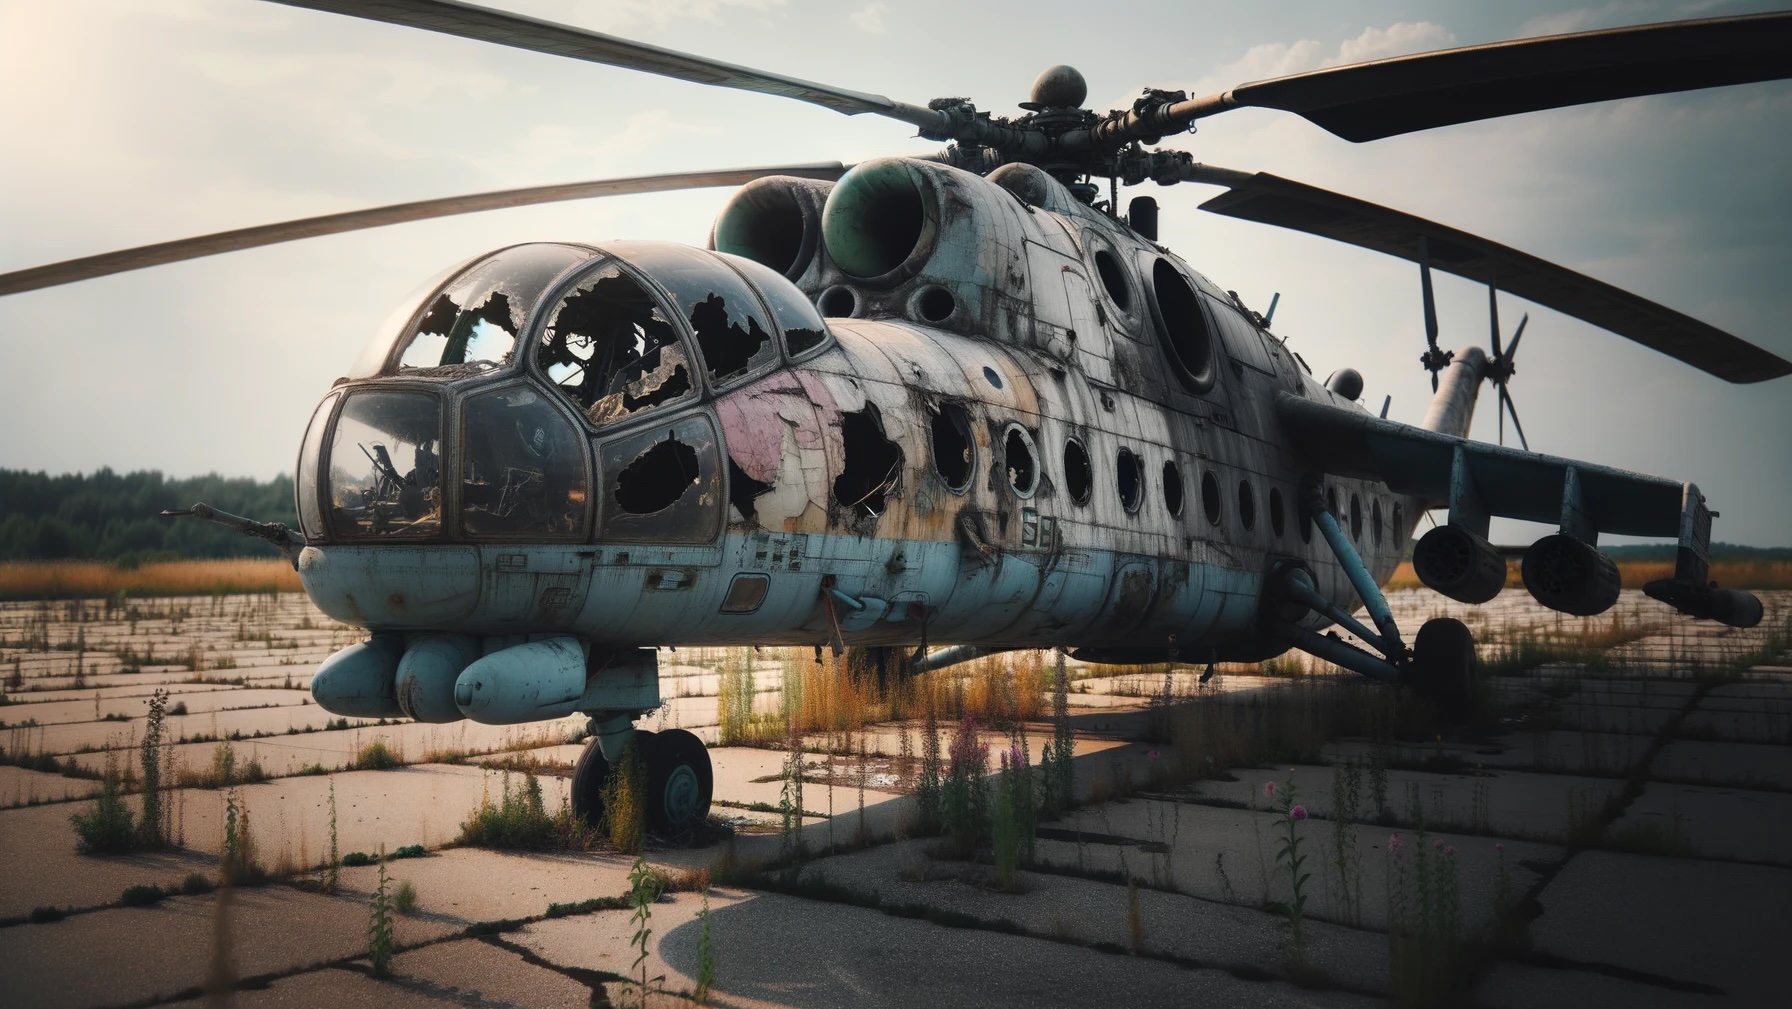 NVA-Waffen für die Ukraine: Lasst lieber die Friedenstaube fliegen!